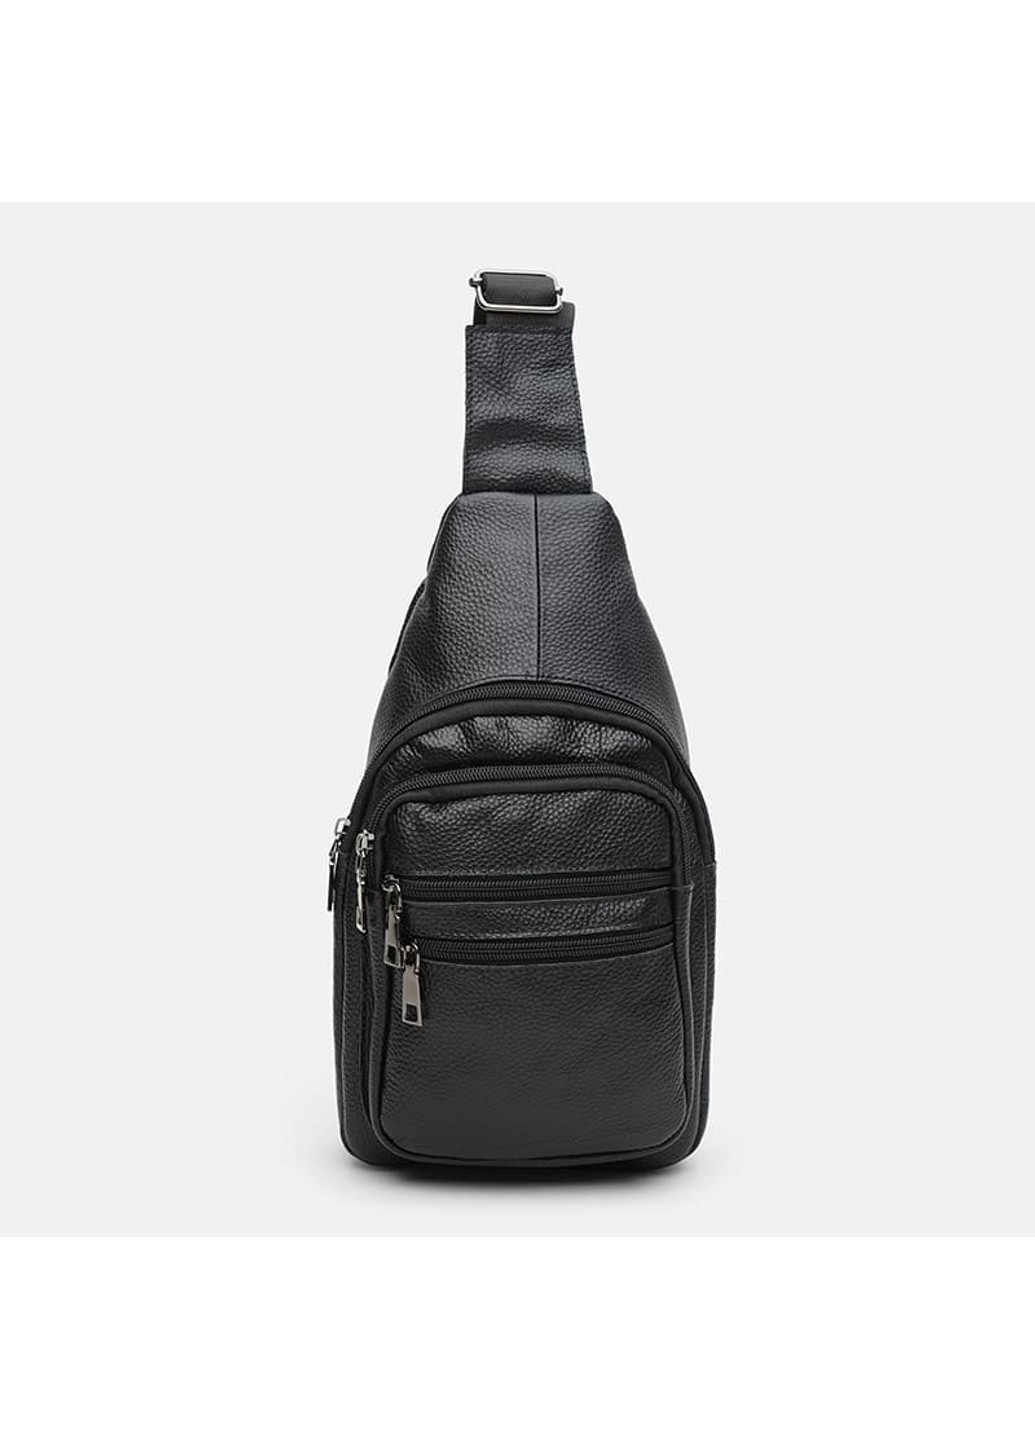 Мужская кожаная сумка K1086bl-black Keizer (266144040)